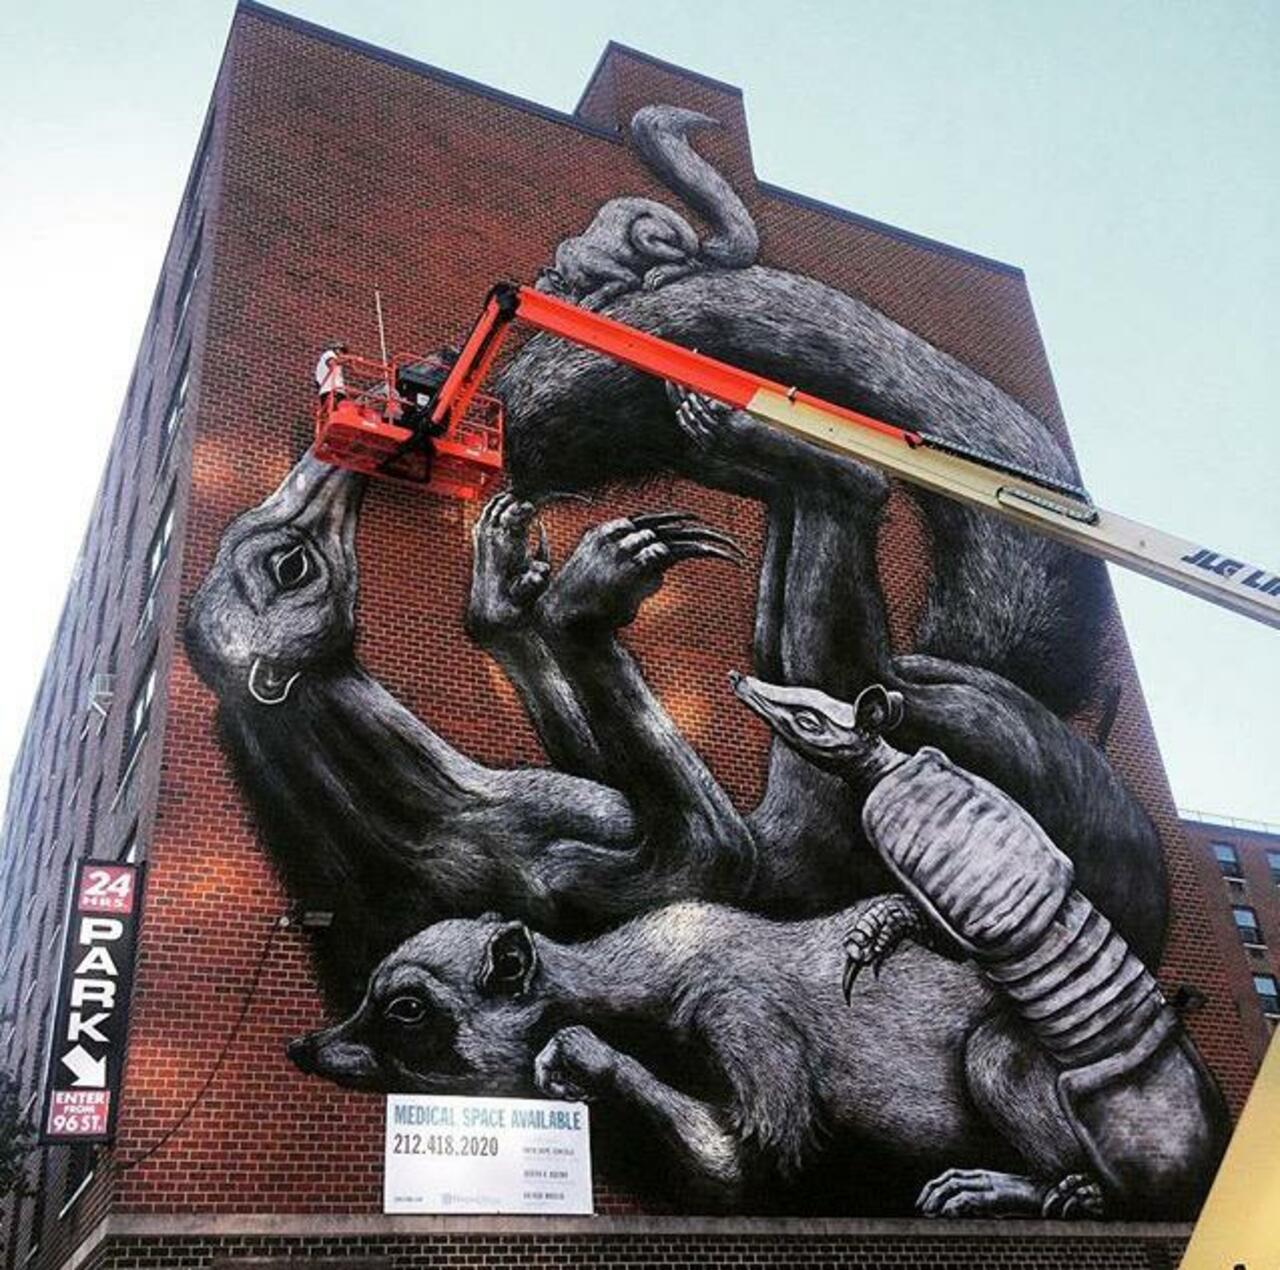 Street Art in progress by ROA in NYC

#art #graffiti #mural #streetart http://t.co/gdEUPjlftE